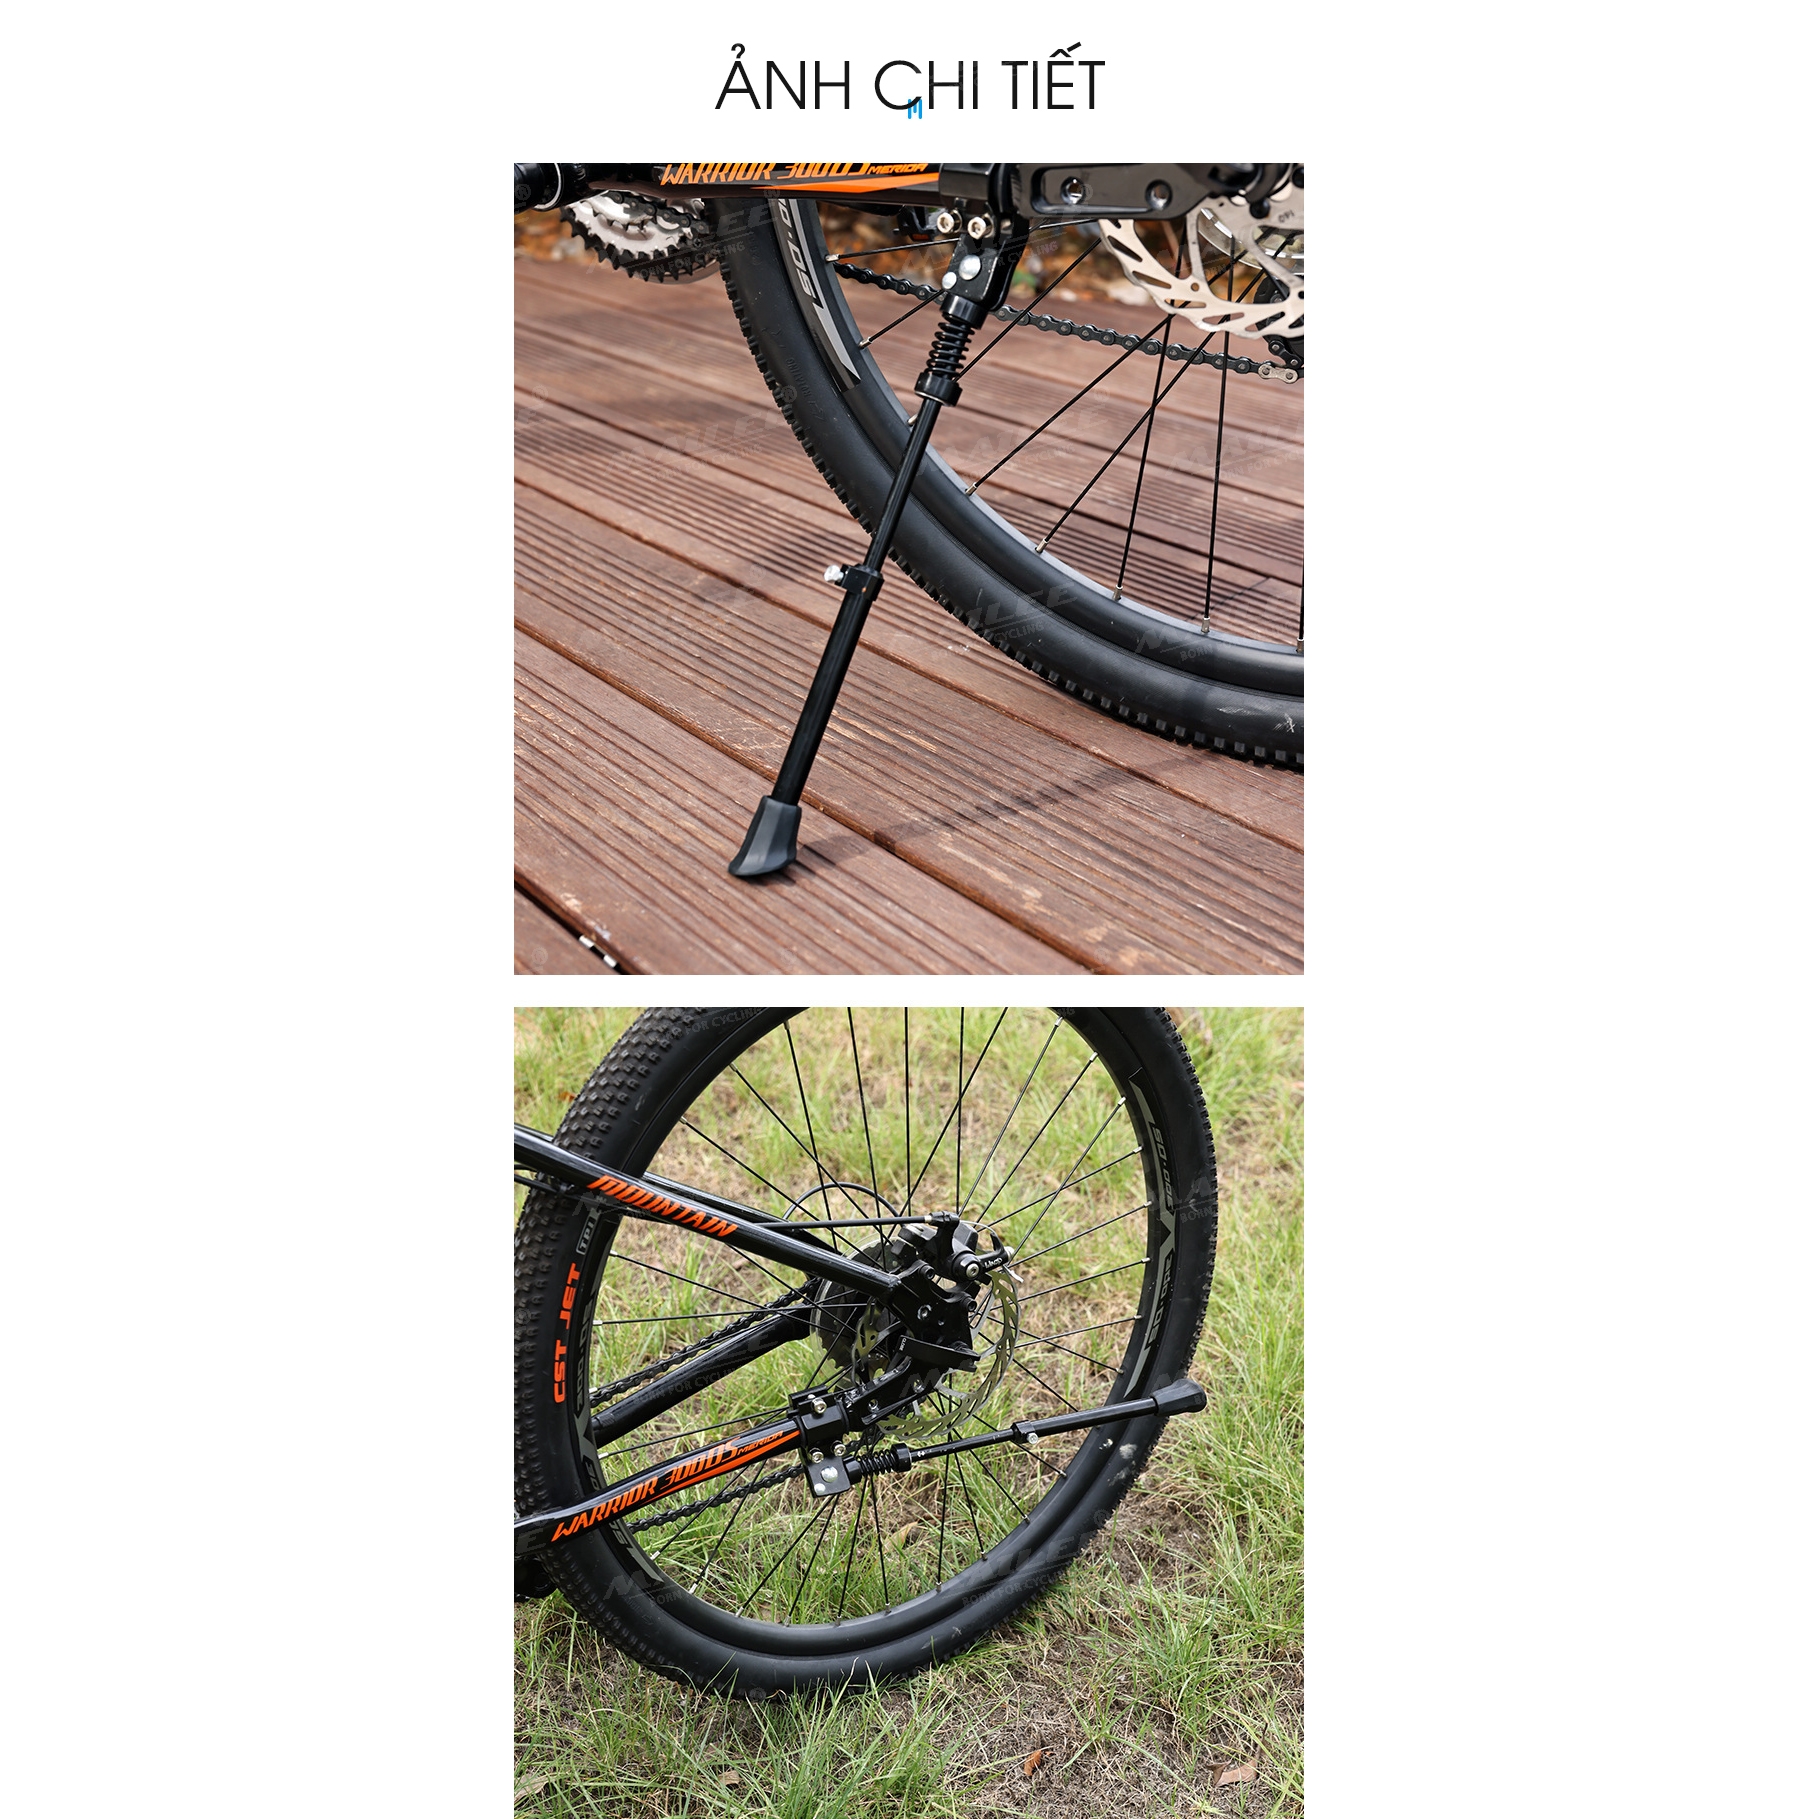 Chân chống xe đạp KW-614 điều chỉnh độ cao 26-36cm lắp đặt đơn giản, chất liệu nhôm, phù hợp nhiều loại xe đạp Mai Lee